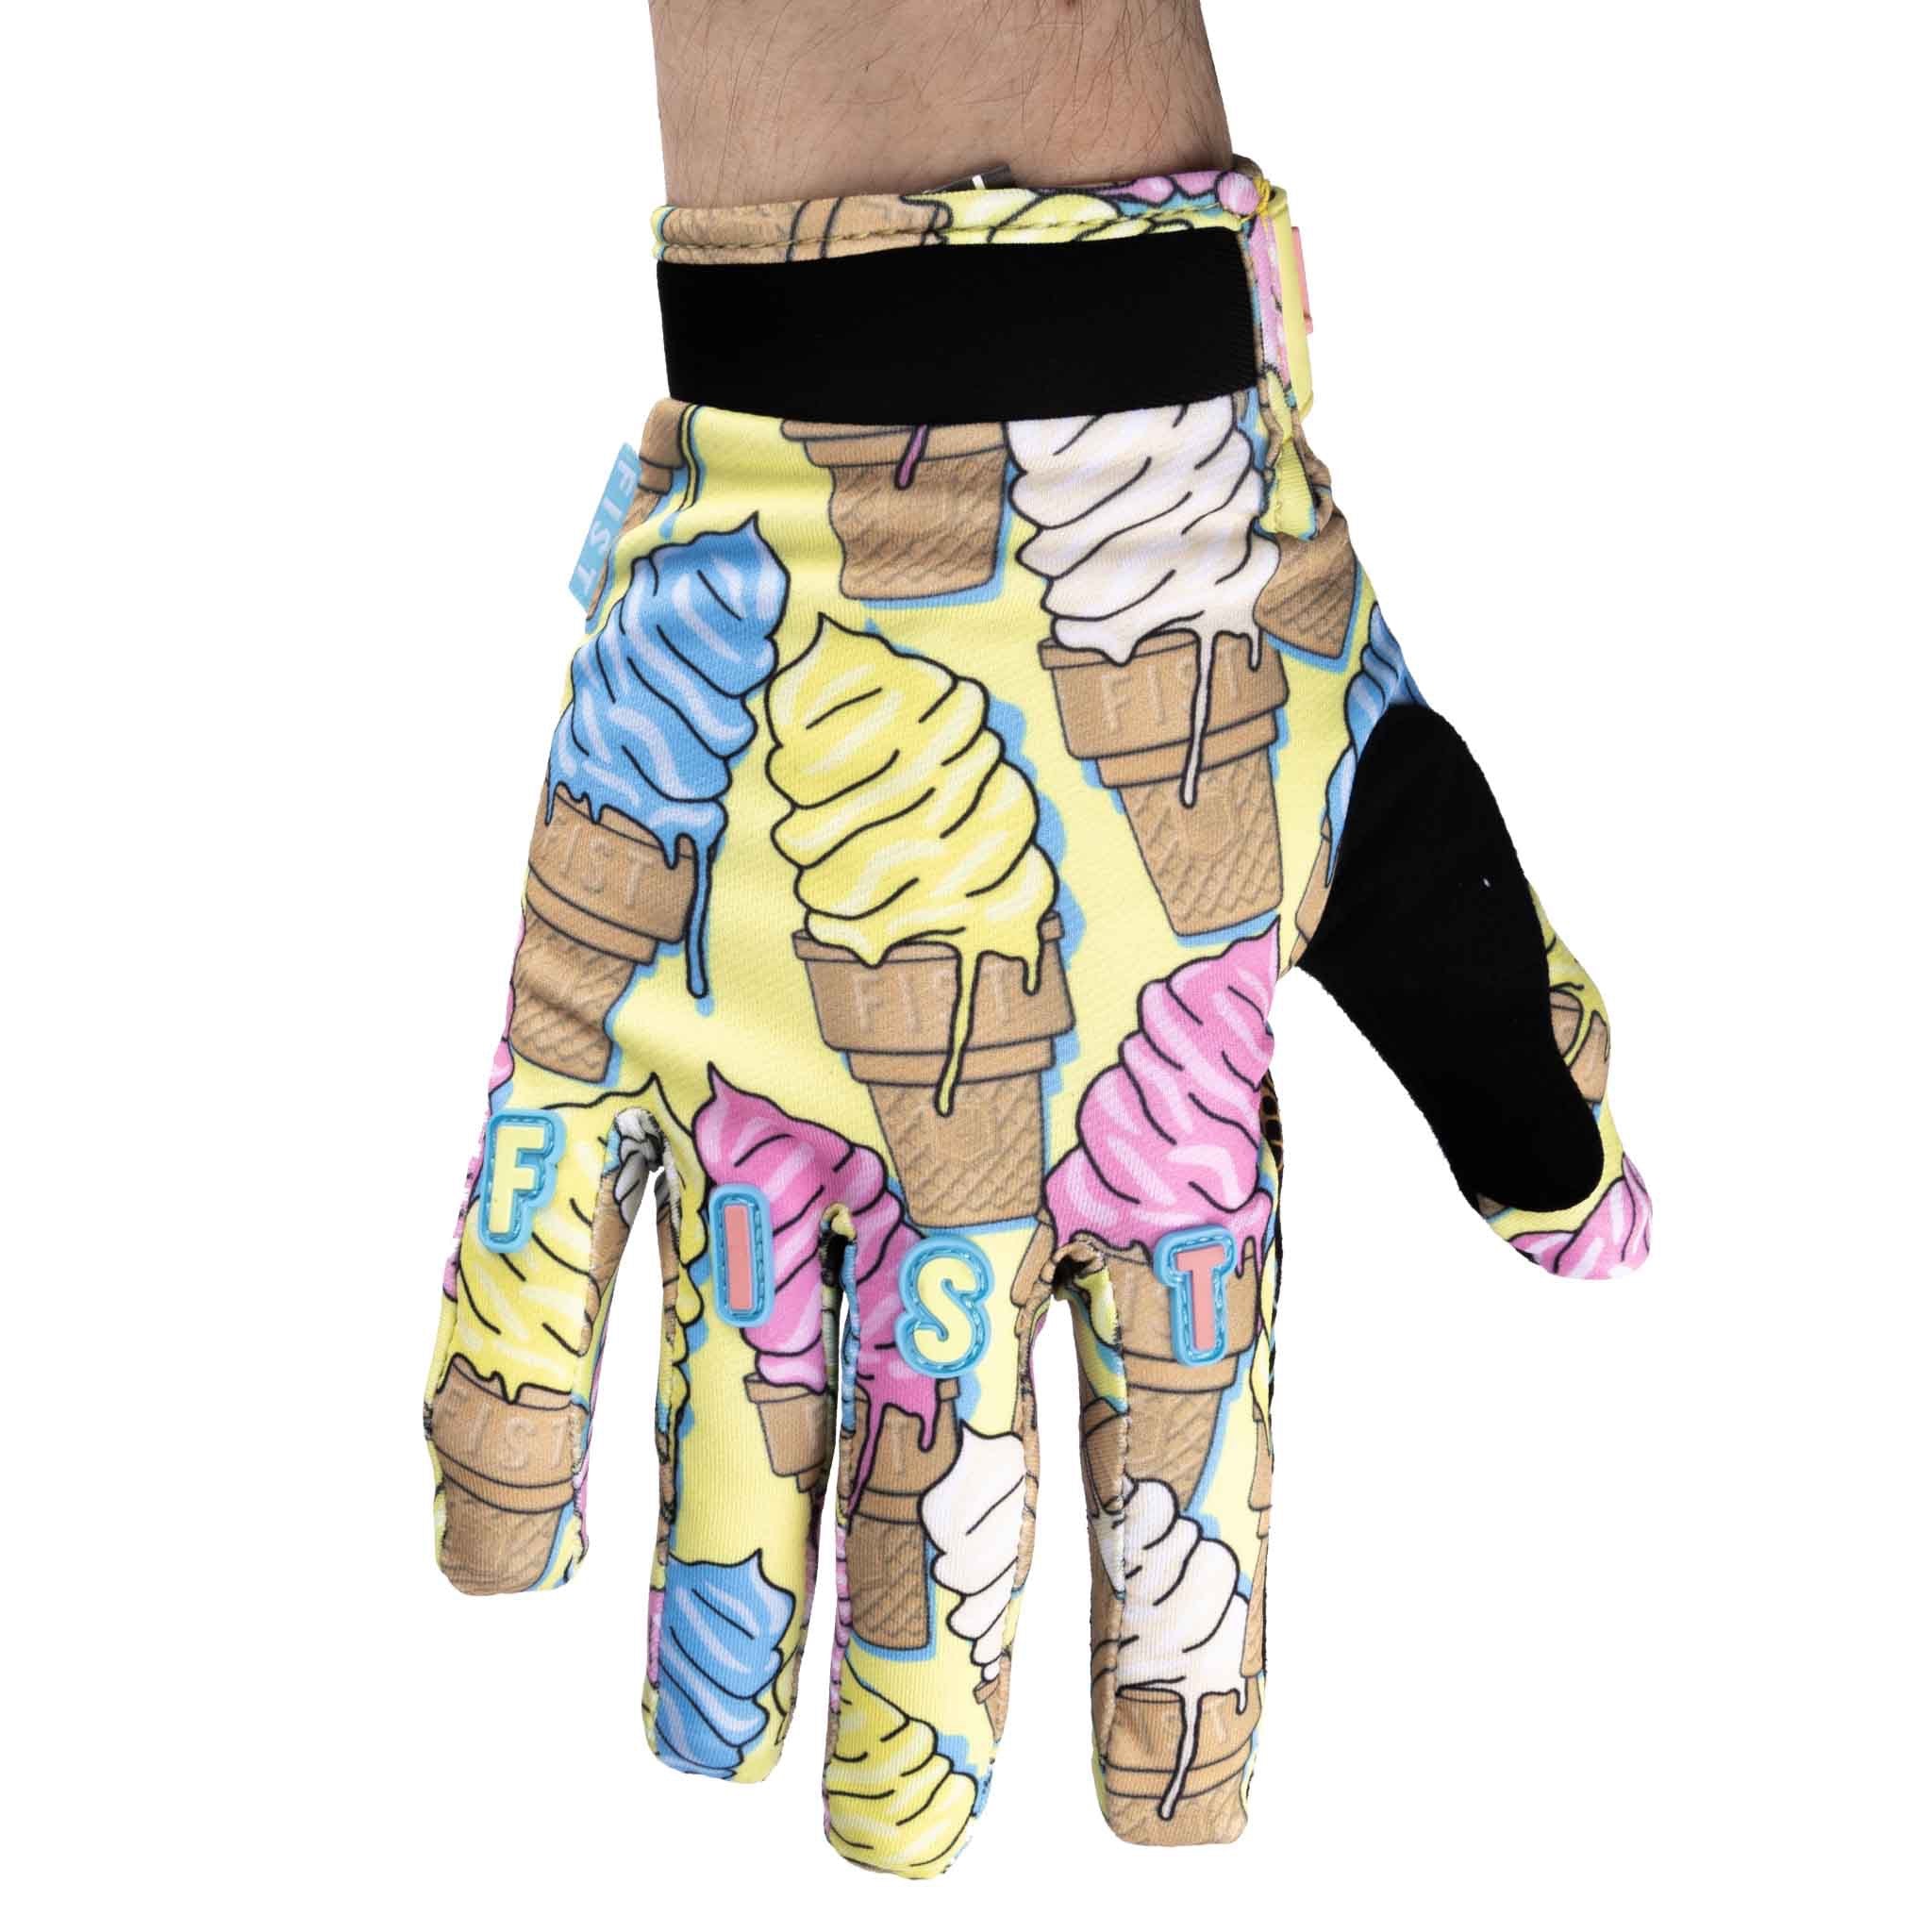 Fist Handwear Chapter 19 Soft Serve Gloves top design detail | Backyard UK BMX Shop